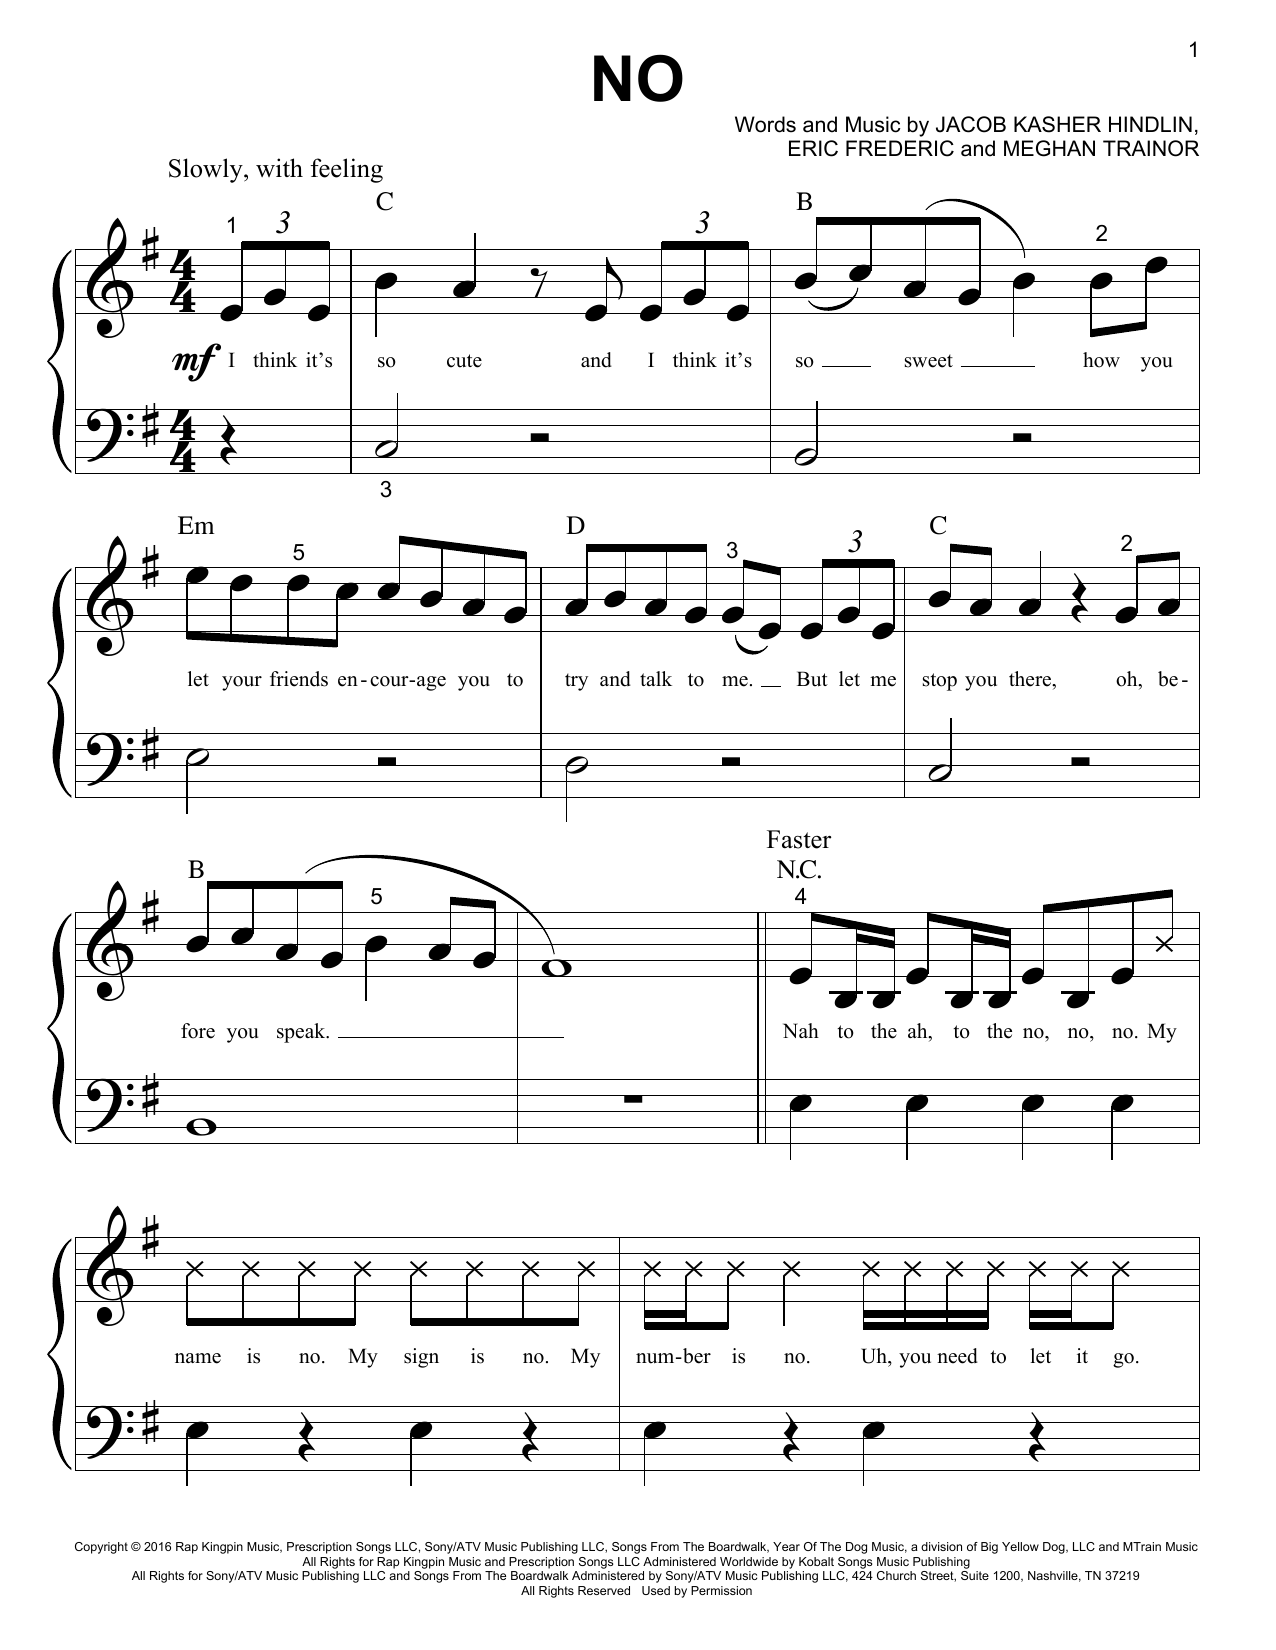 Meghan Trainor No Sheet Music Notes Chords Download Pop Notes Piano Big Notes Pdf Print 174516